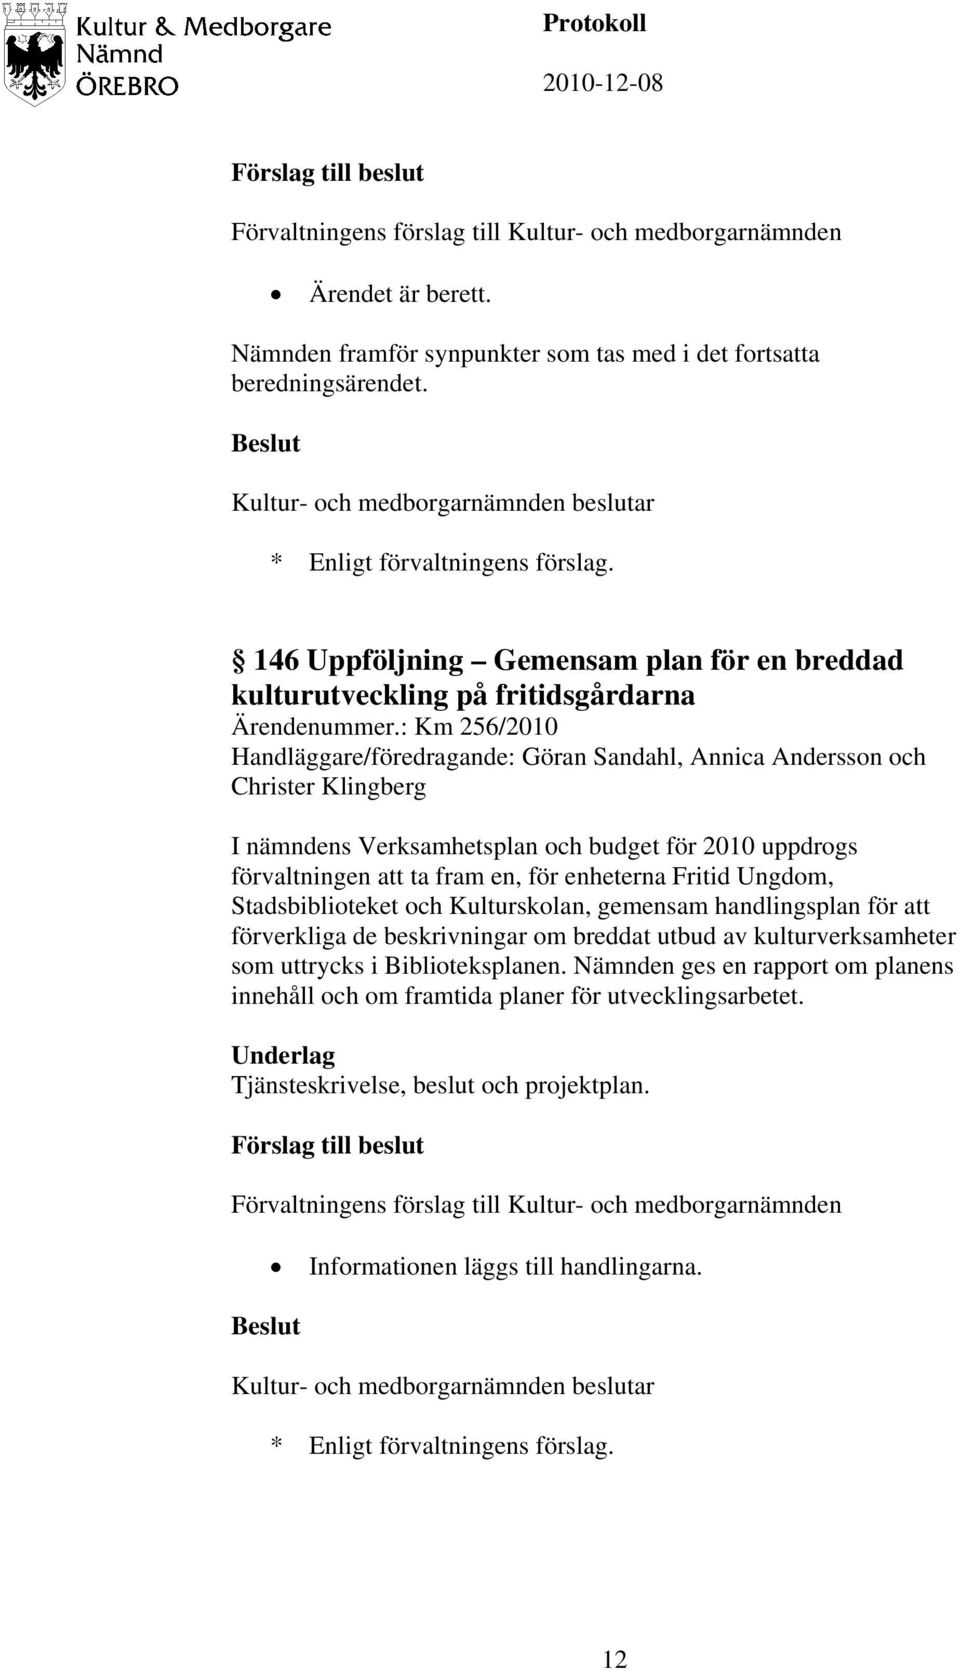 : Km 256/2010 Handläggare/föredragande: Göran Sandahl, Annica Andersson och Christer Klingberg I nämndens Verksamhetsplan och budget för 2010 uppdrogs förvaltningen att ta fram